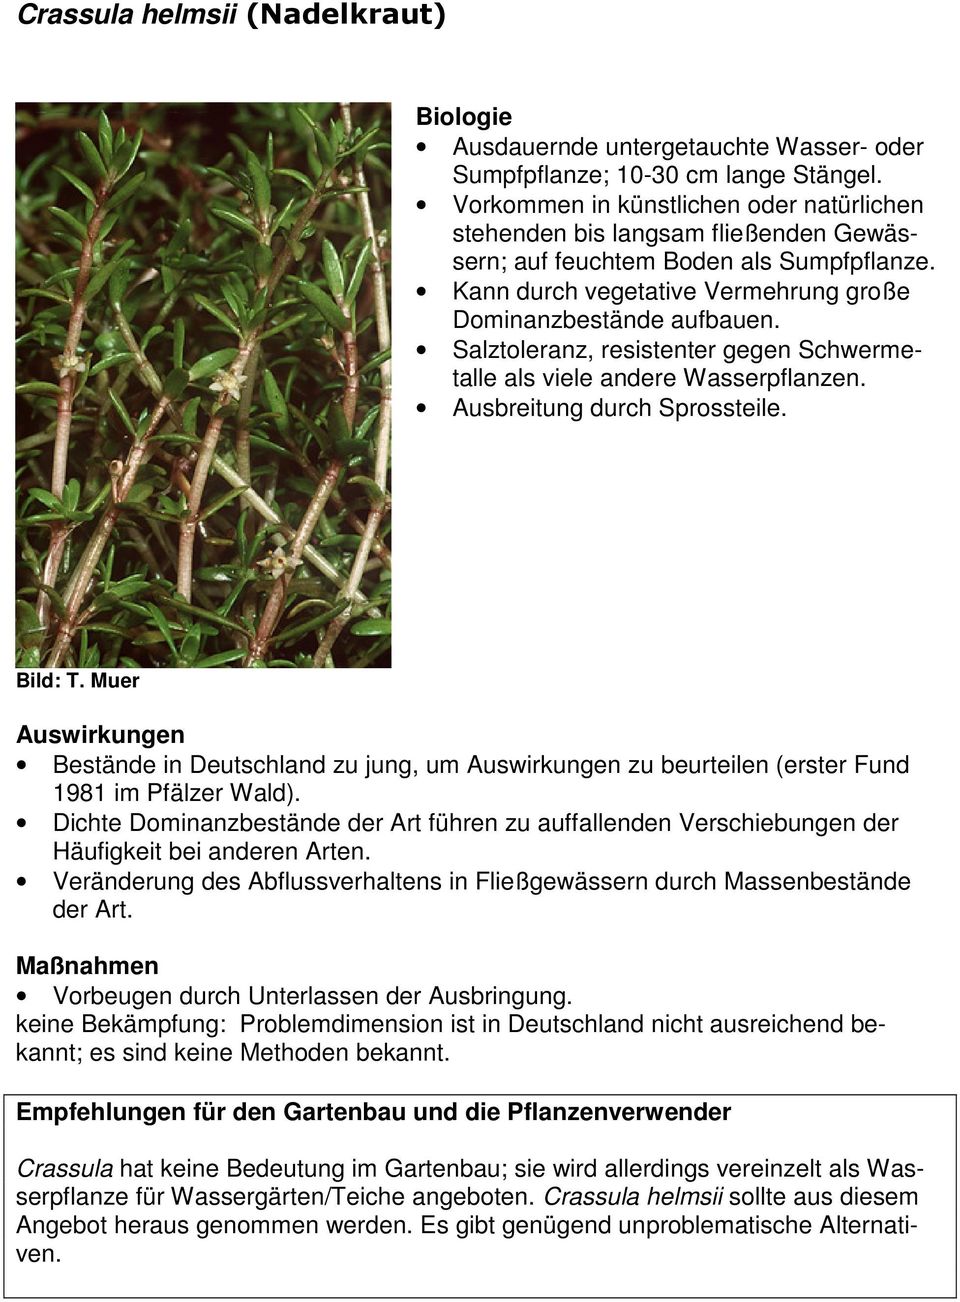 Salztoleranz, resistenter gegen Schwermetalle als viele andere Wasserpflanzen. Ausbreitung durch Sprossteile. Bestände in Deutschland zu jung, um zu beurteilen (erster Fund 1981 im Pfälzer Wald).